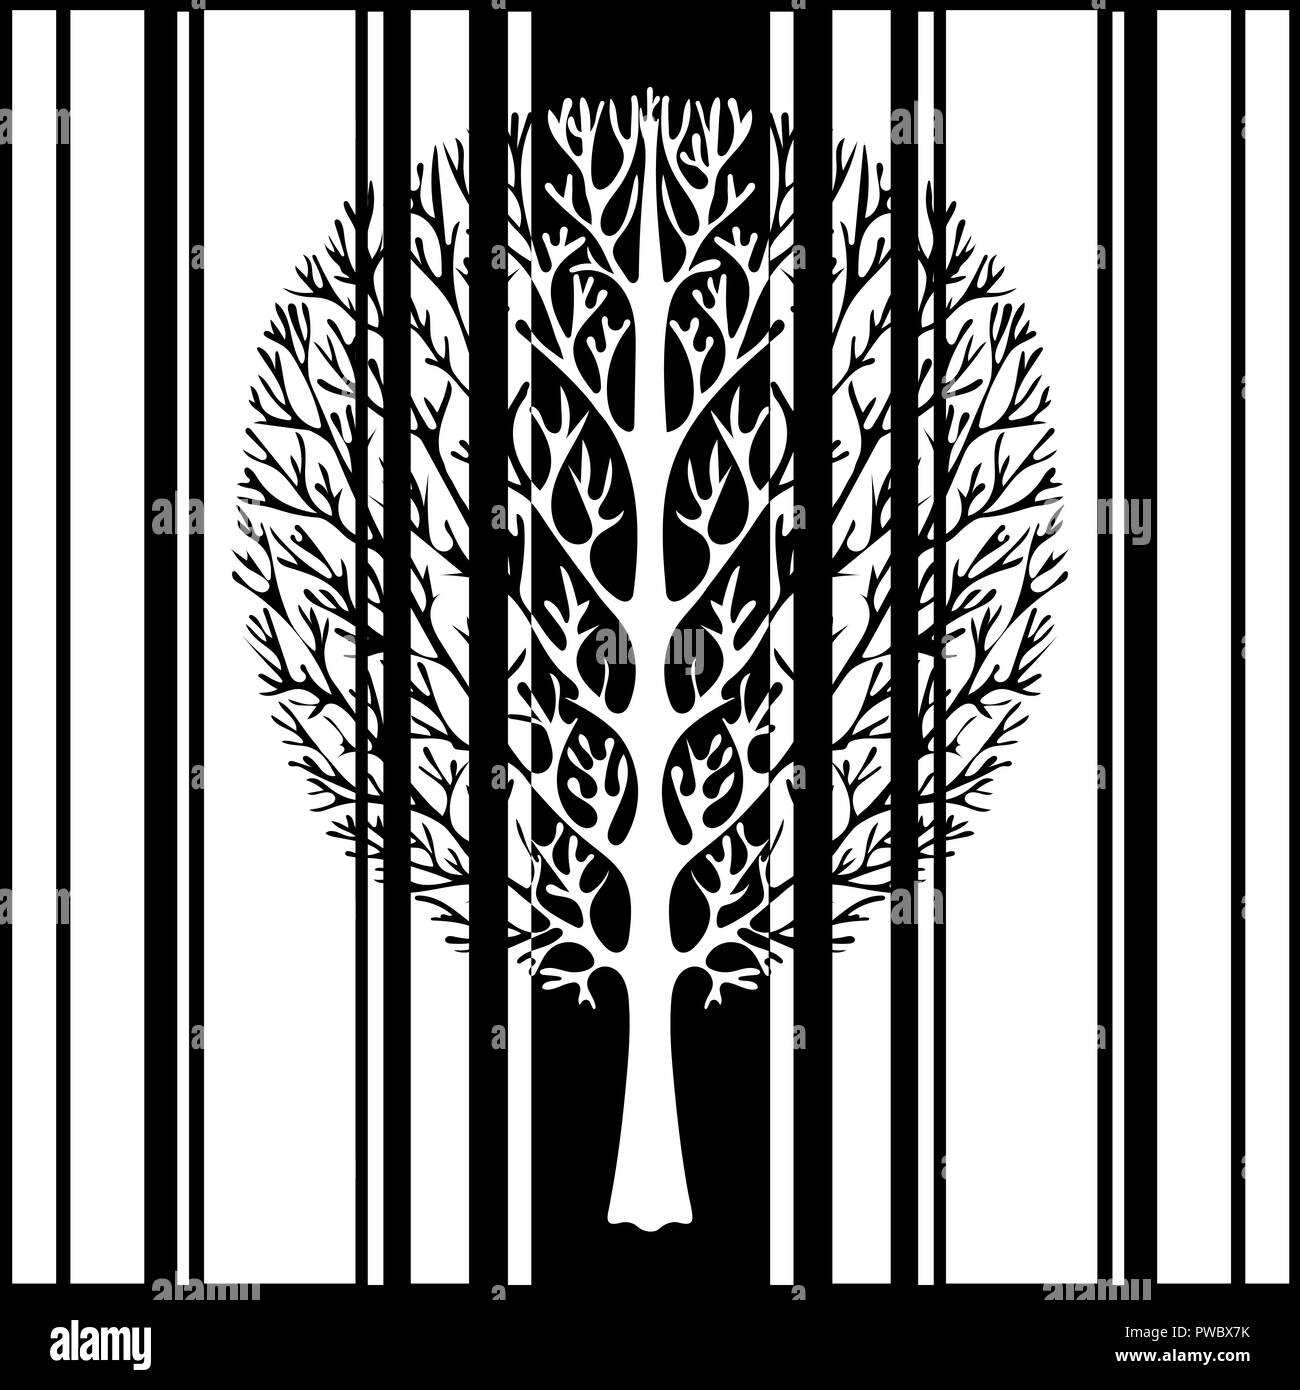 Abstract tree, vector illustration, dessin monochrome stylisée vintage. Arbre décoré avec des branches dans le contexte des bandes noires et blanches r Illustration de Vecteur